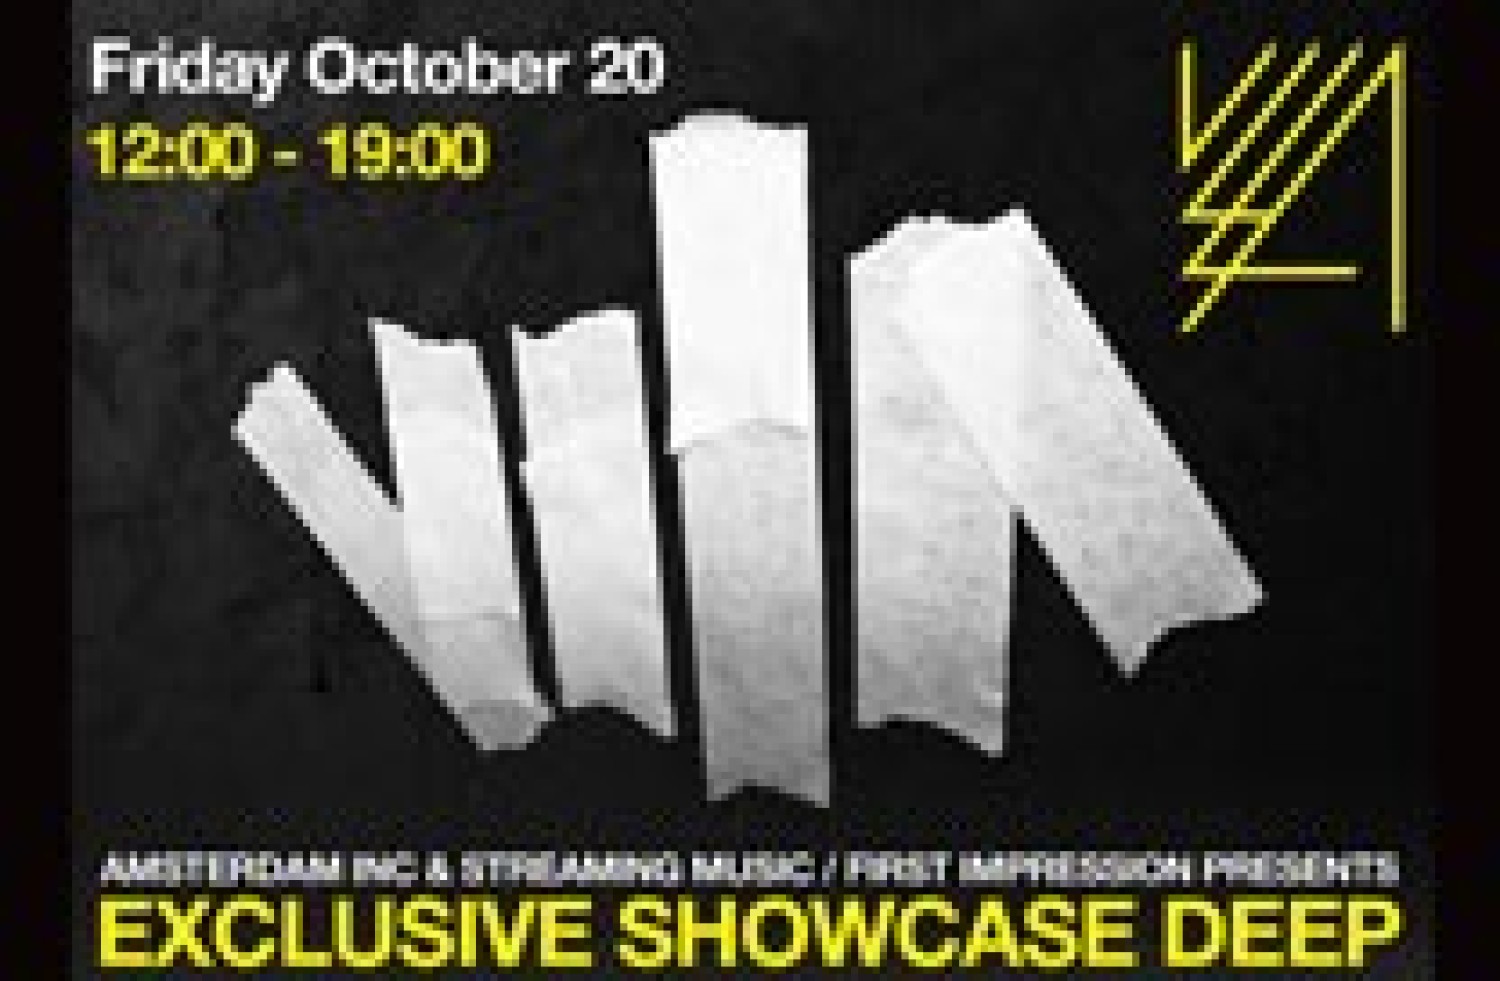 Party nieuws: Exclusive Showcase D E E P in VLLA op 20 oktober!